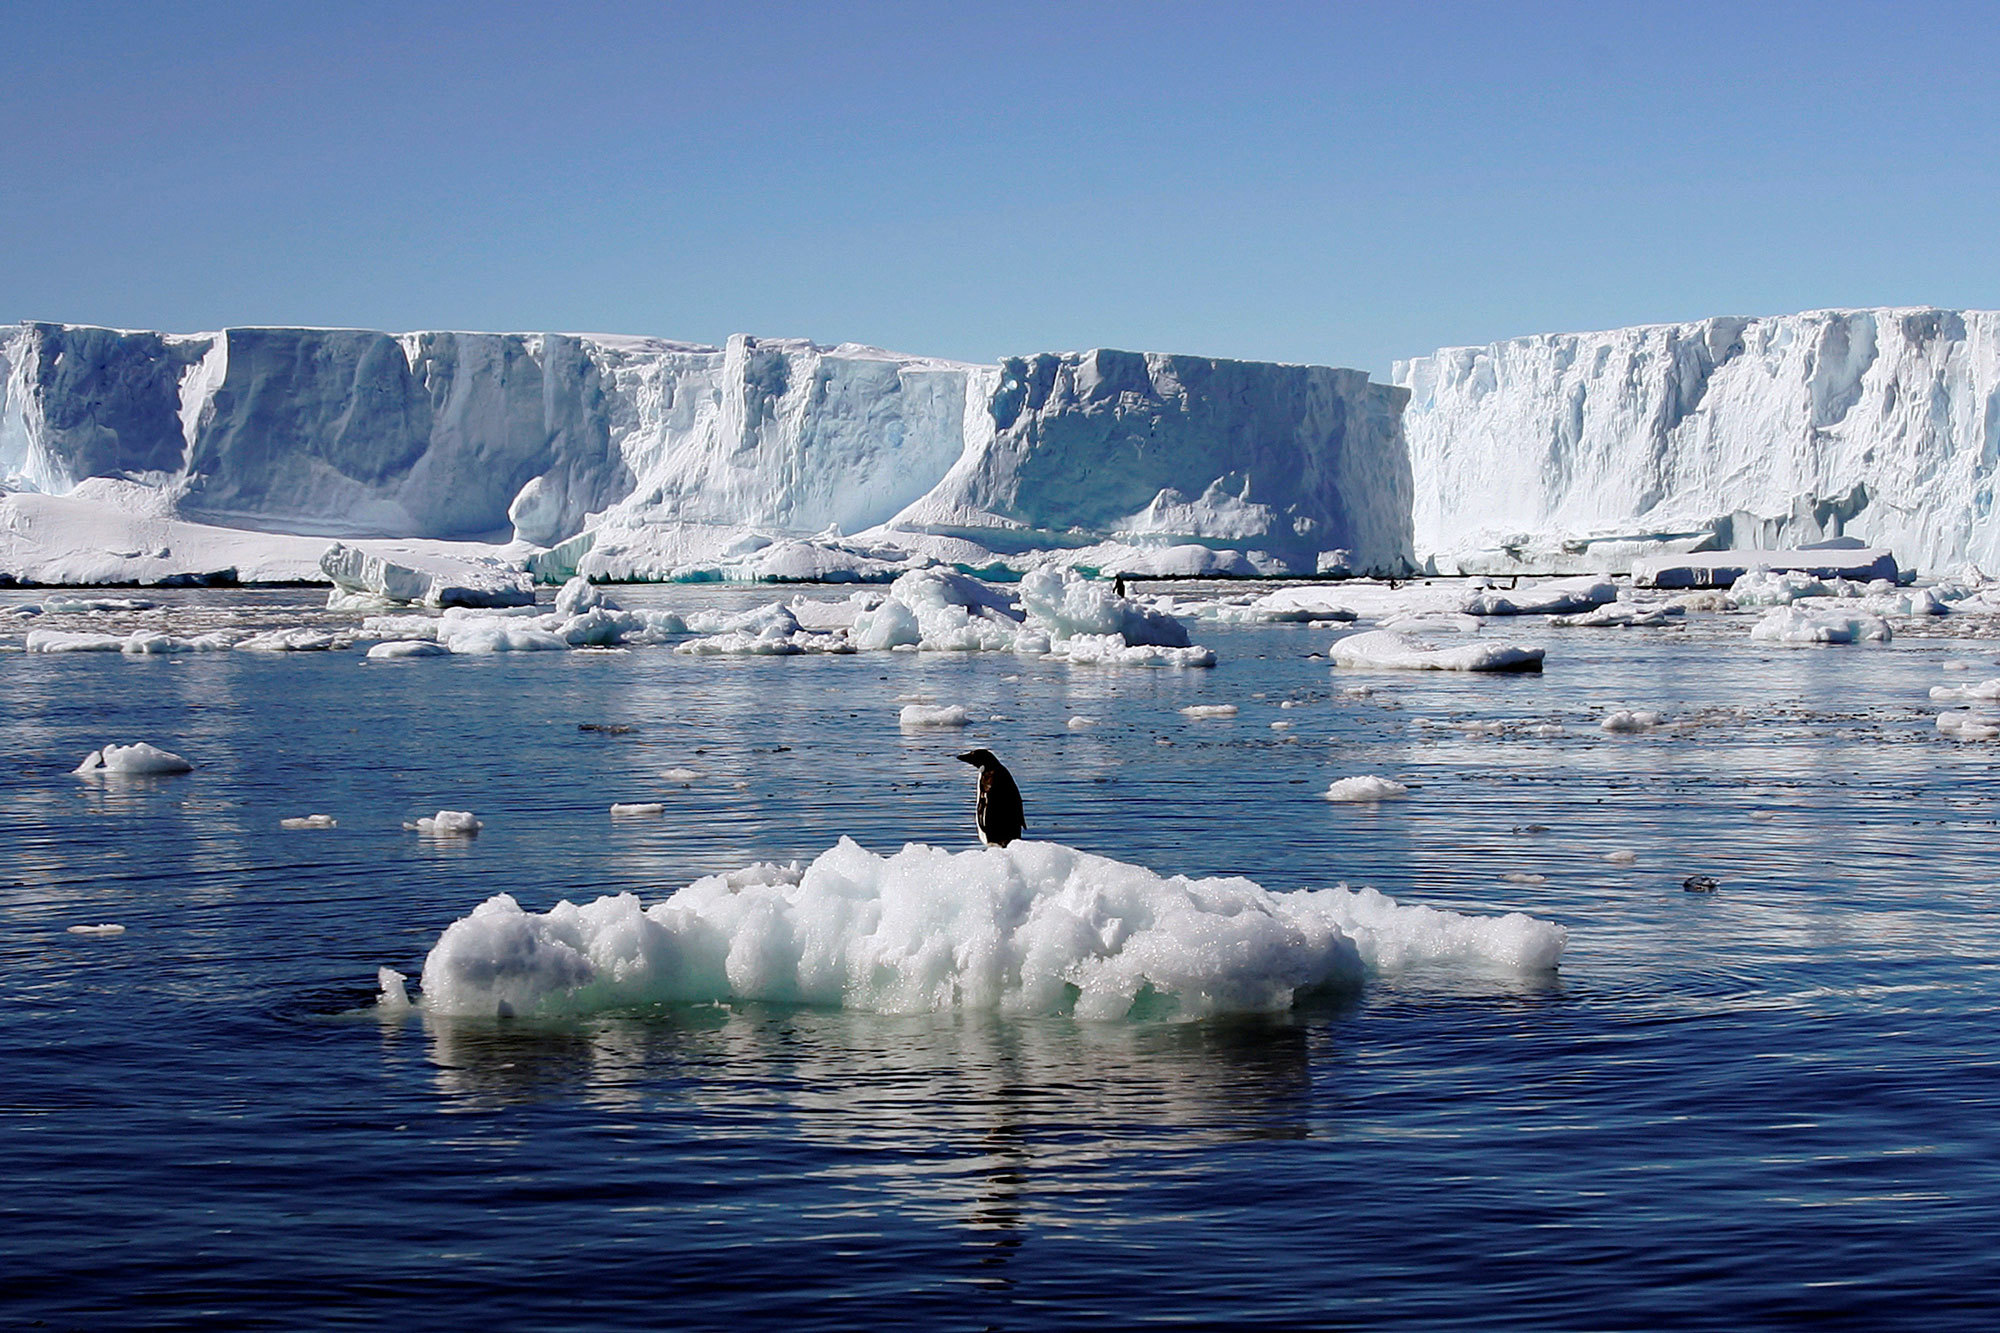 बढ़ते समुद्र, घटते ग्लेशियर; लगभग 100 प्रतिशत ग्लोबल वार्मिंग का कारण इंसान: यूएन जलवायु समिति